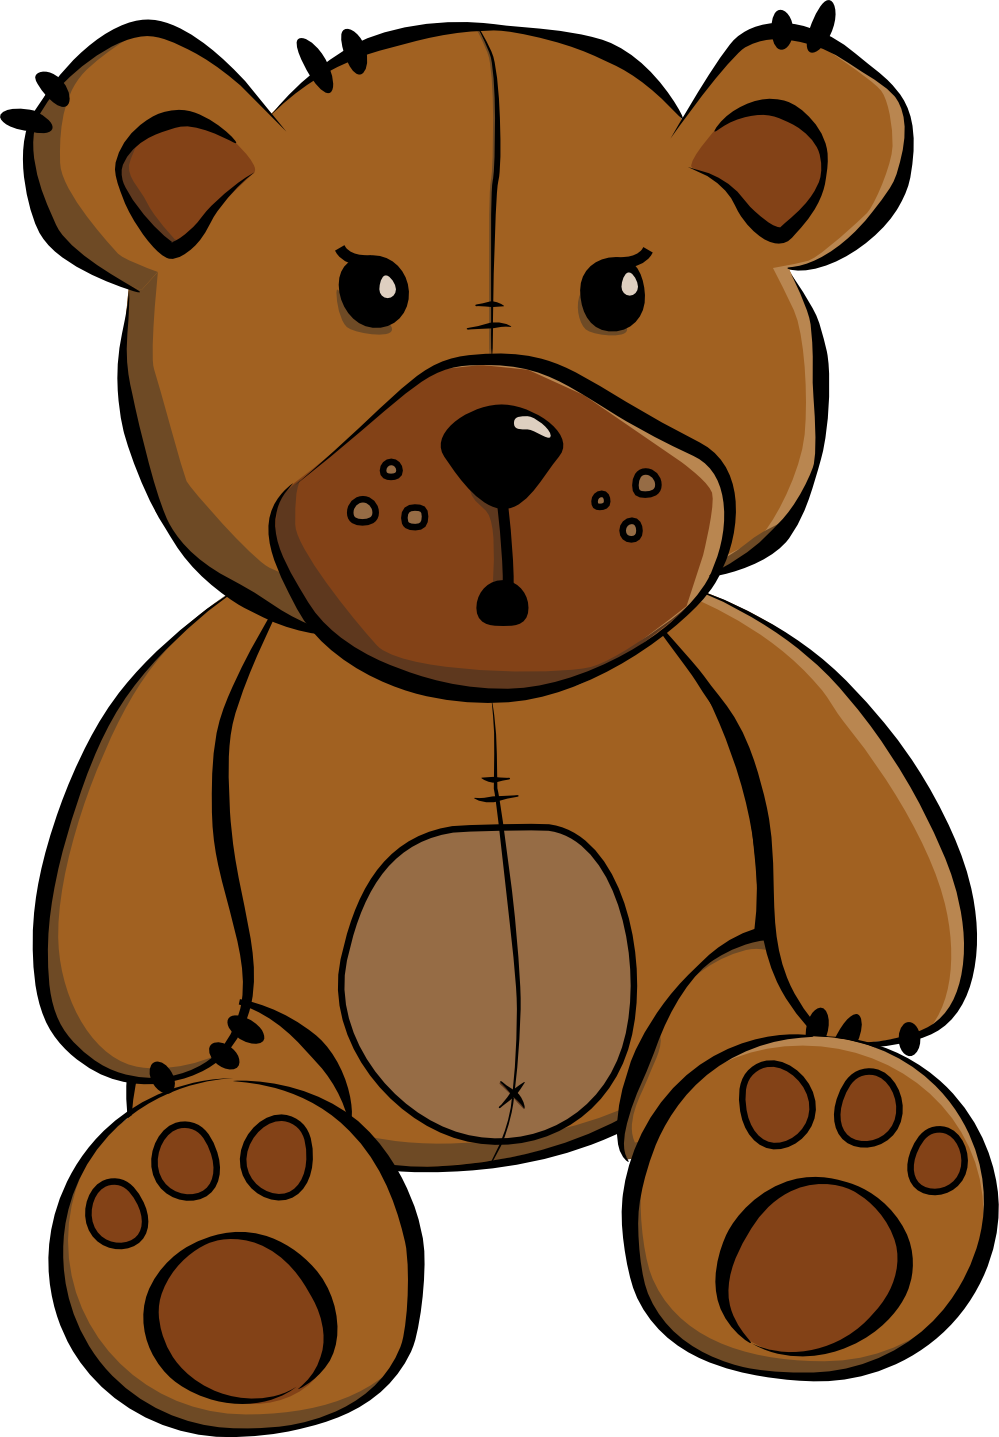 Clip Art: c oon teddy bear xmas christmas SVG - ClipArt Best ...